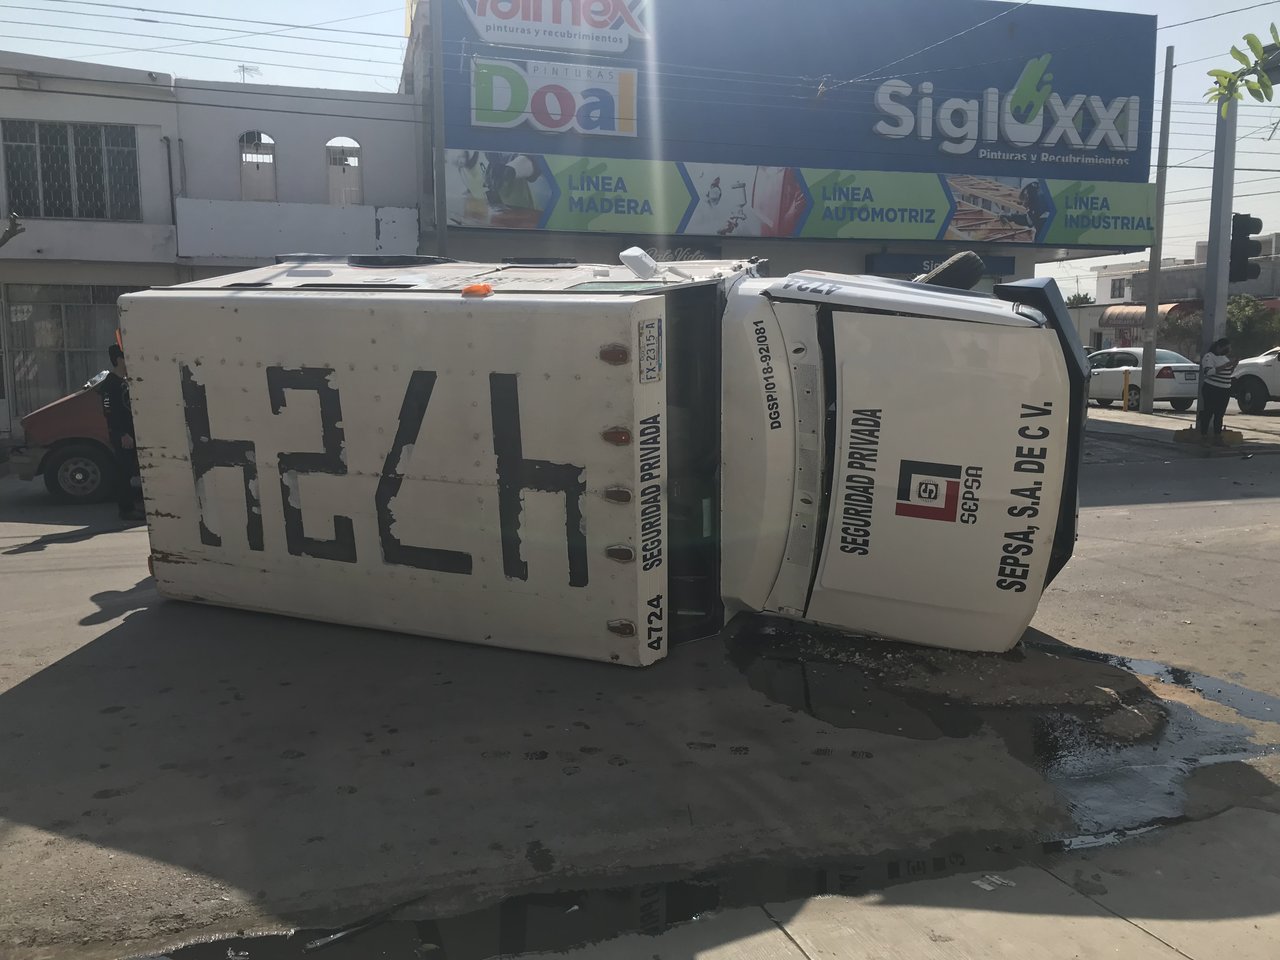 Camión de valores vuelca en Centro de Torreón